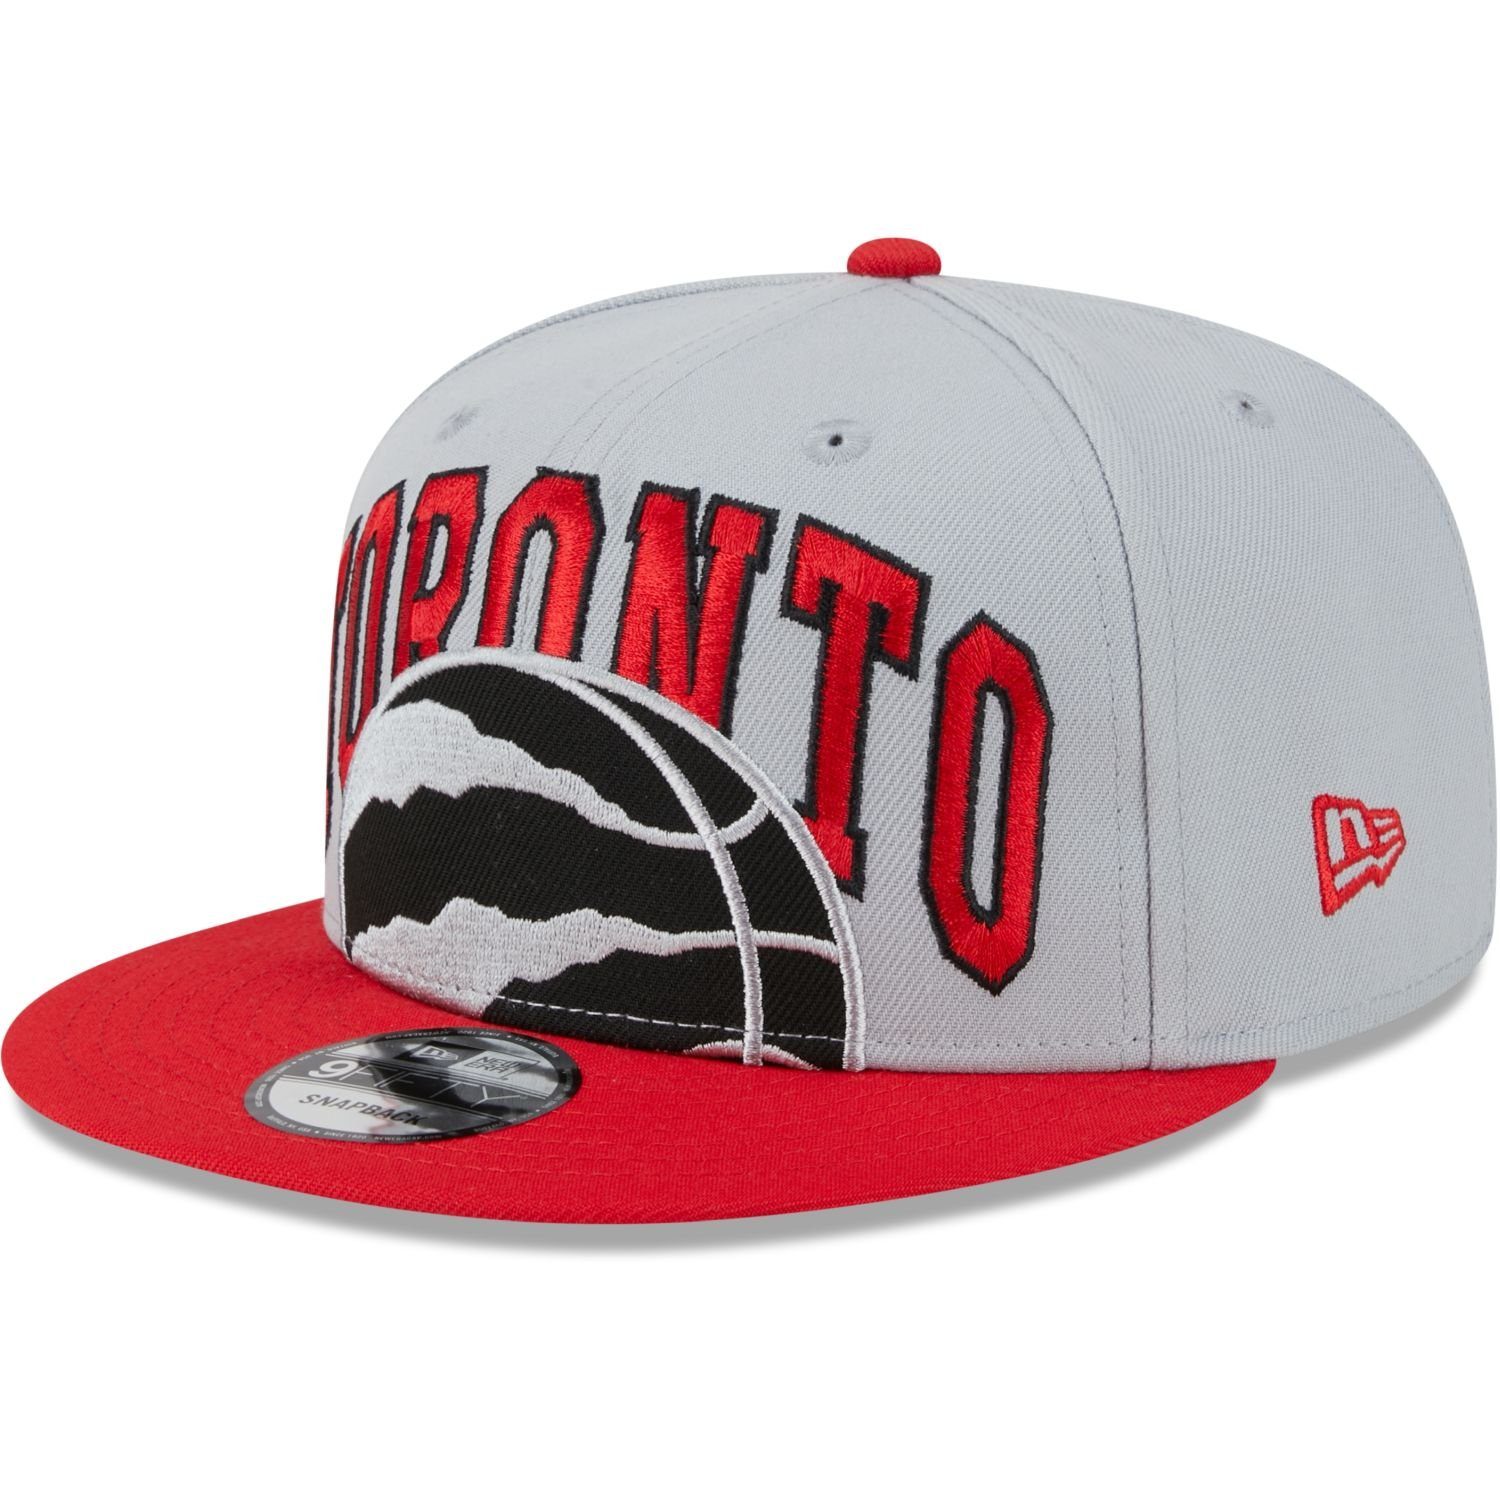 New Era Snapback Cap 9FIFTY NBA TIPOFF Toronto Raptors